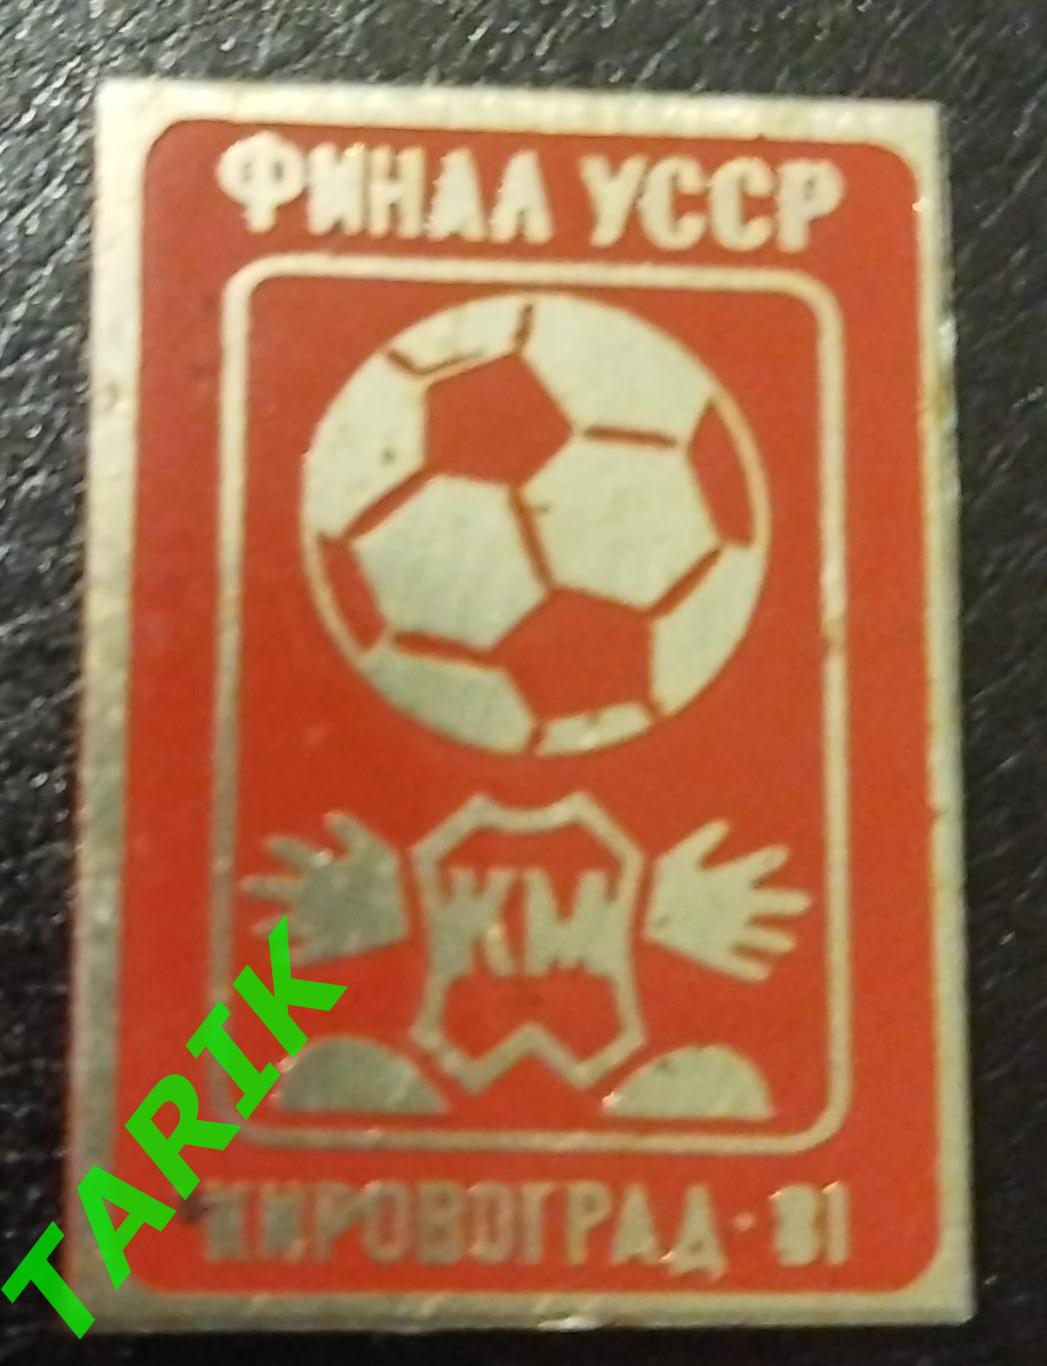 Кожаный мяч Финал УССР Кировоград 1981